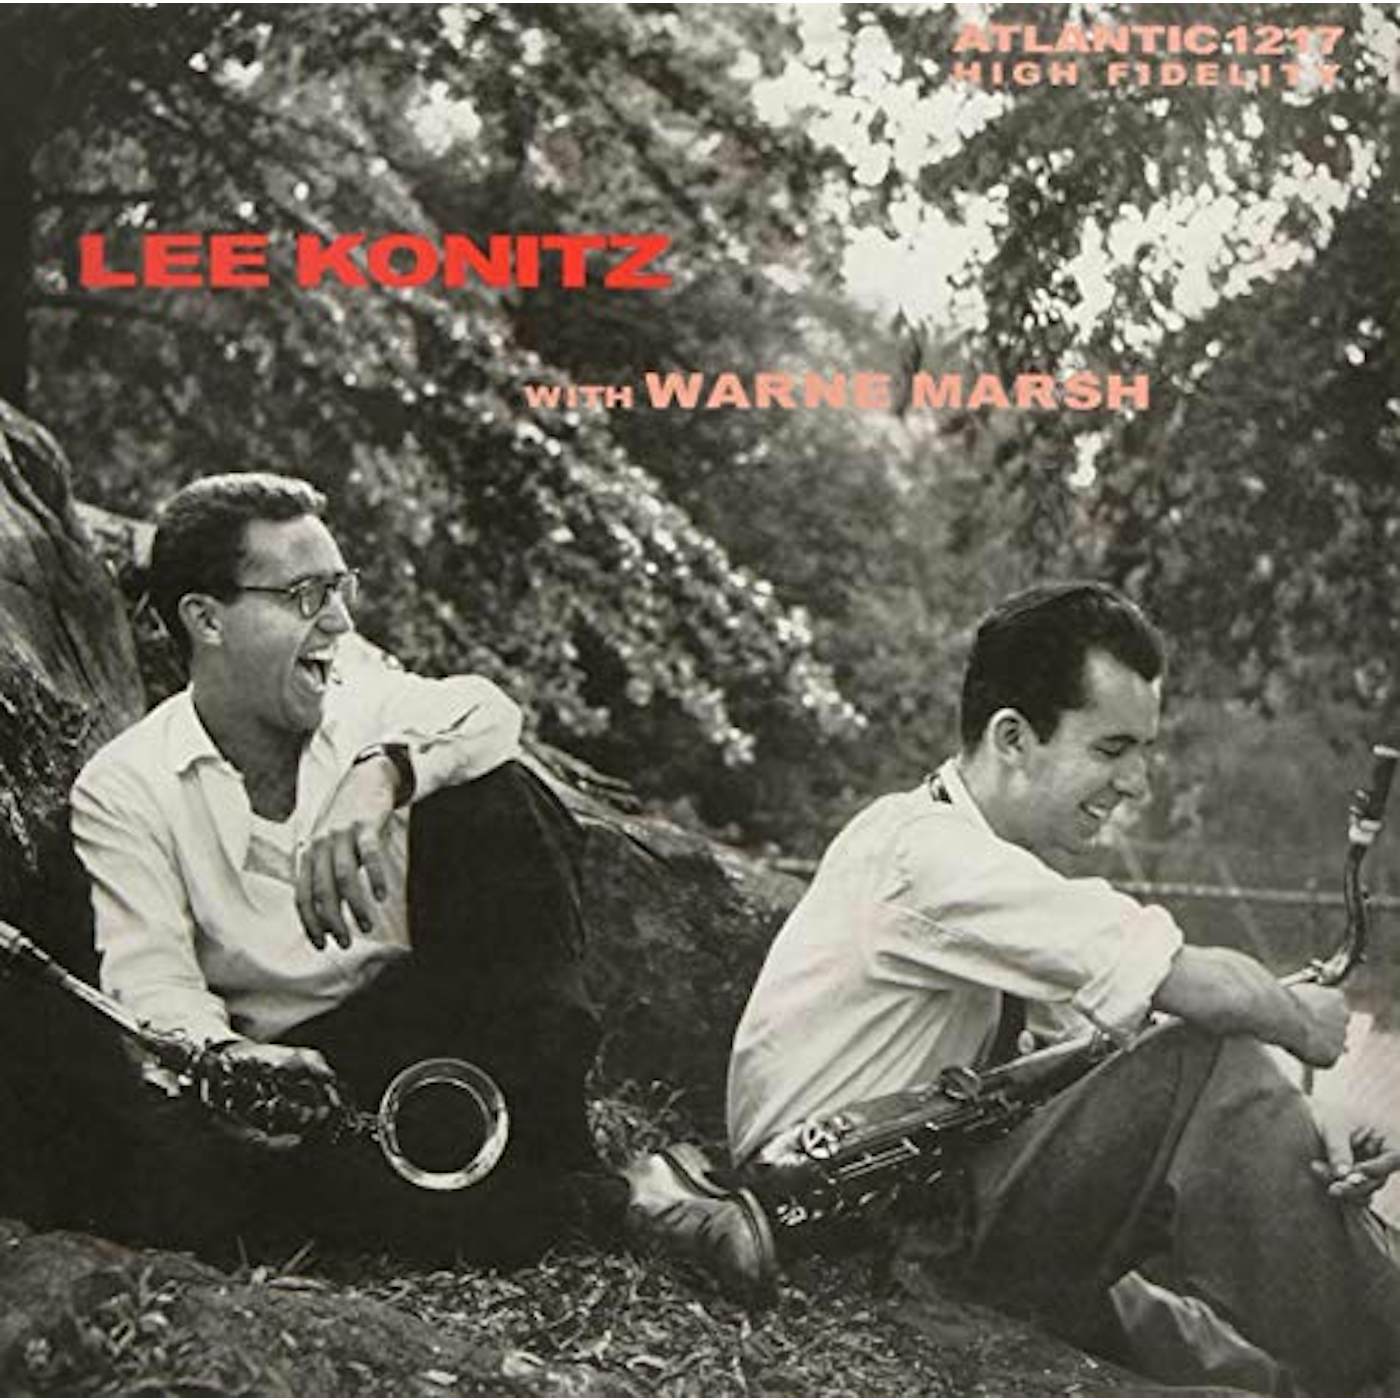 Lee Konitz & Warne Marsh Lee Konitz With Warne Marsh Vinyl Record